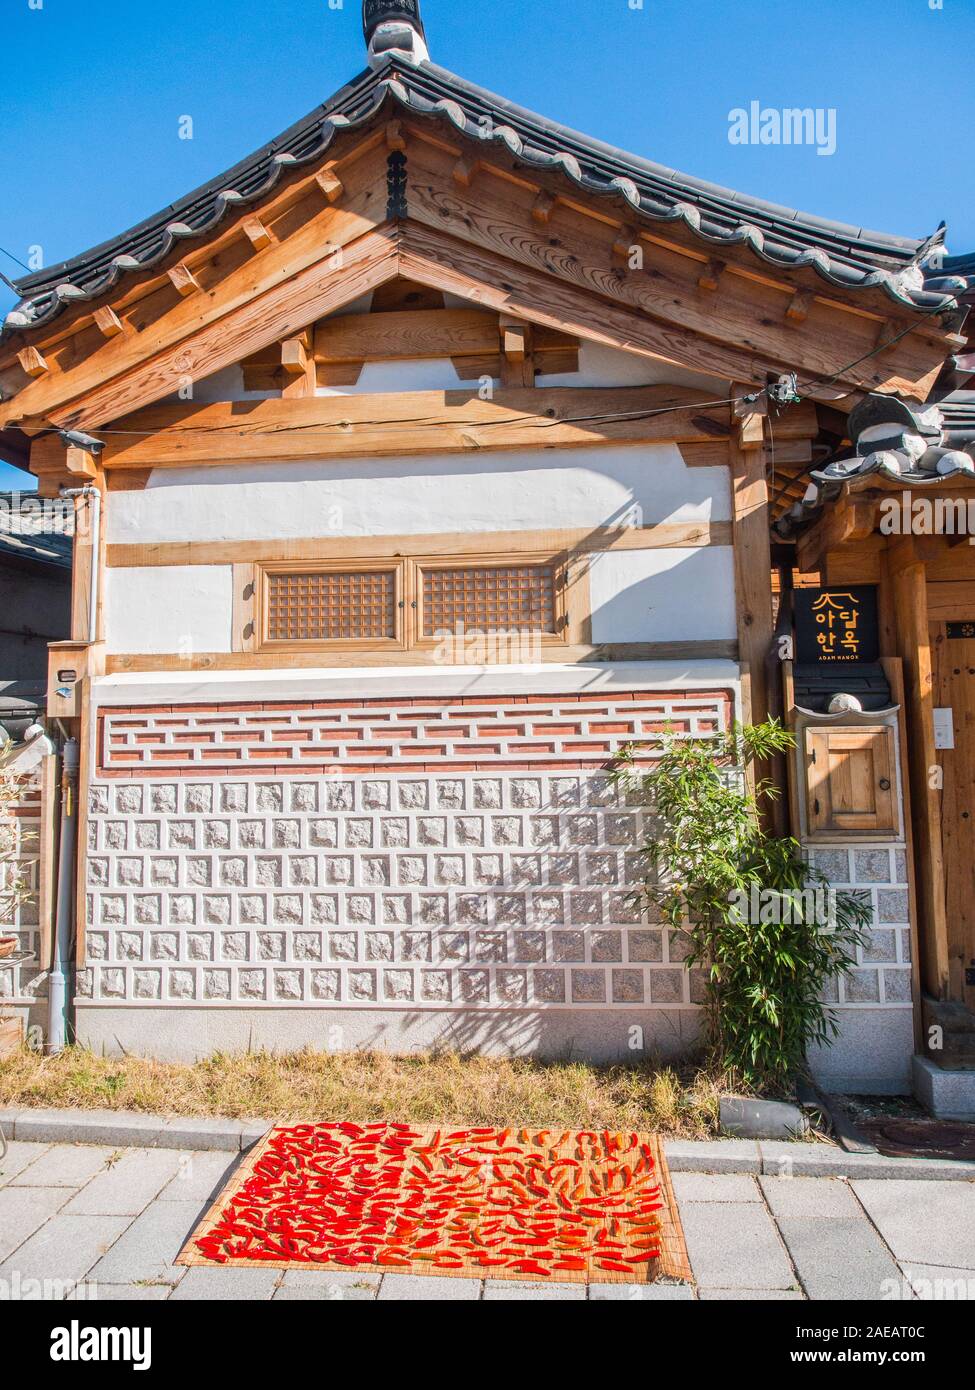 Peperoncini rossi, di cui fuori ad asciugare al sole, sul tappeto di canna, sulla strada, al di fuori della tradizionale casa hanok, Tongin Mercato, Seoul, Corea del Sud Foto Stock